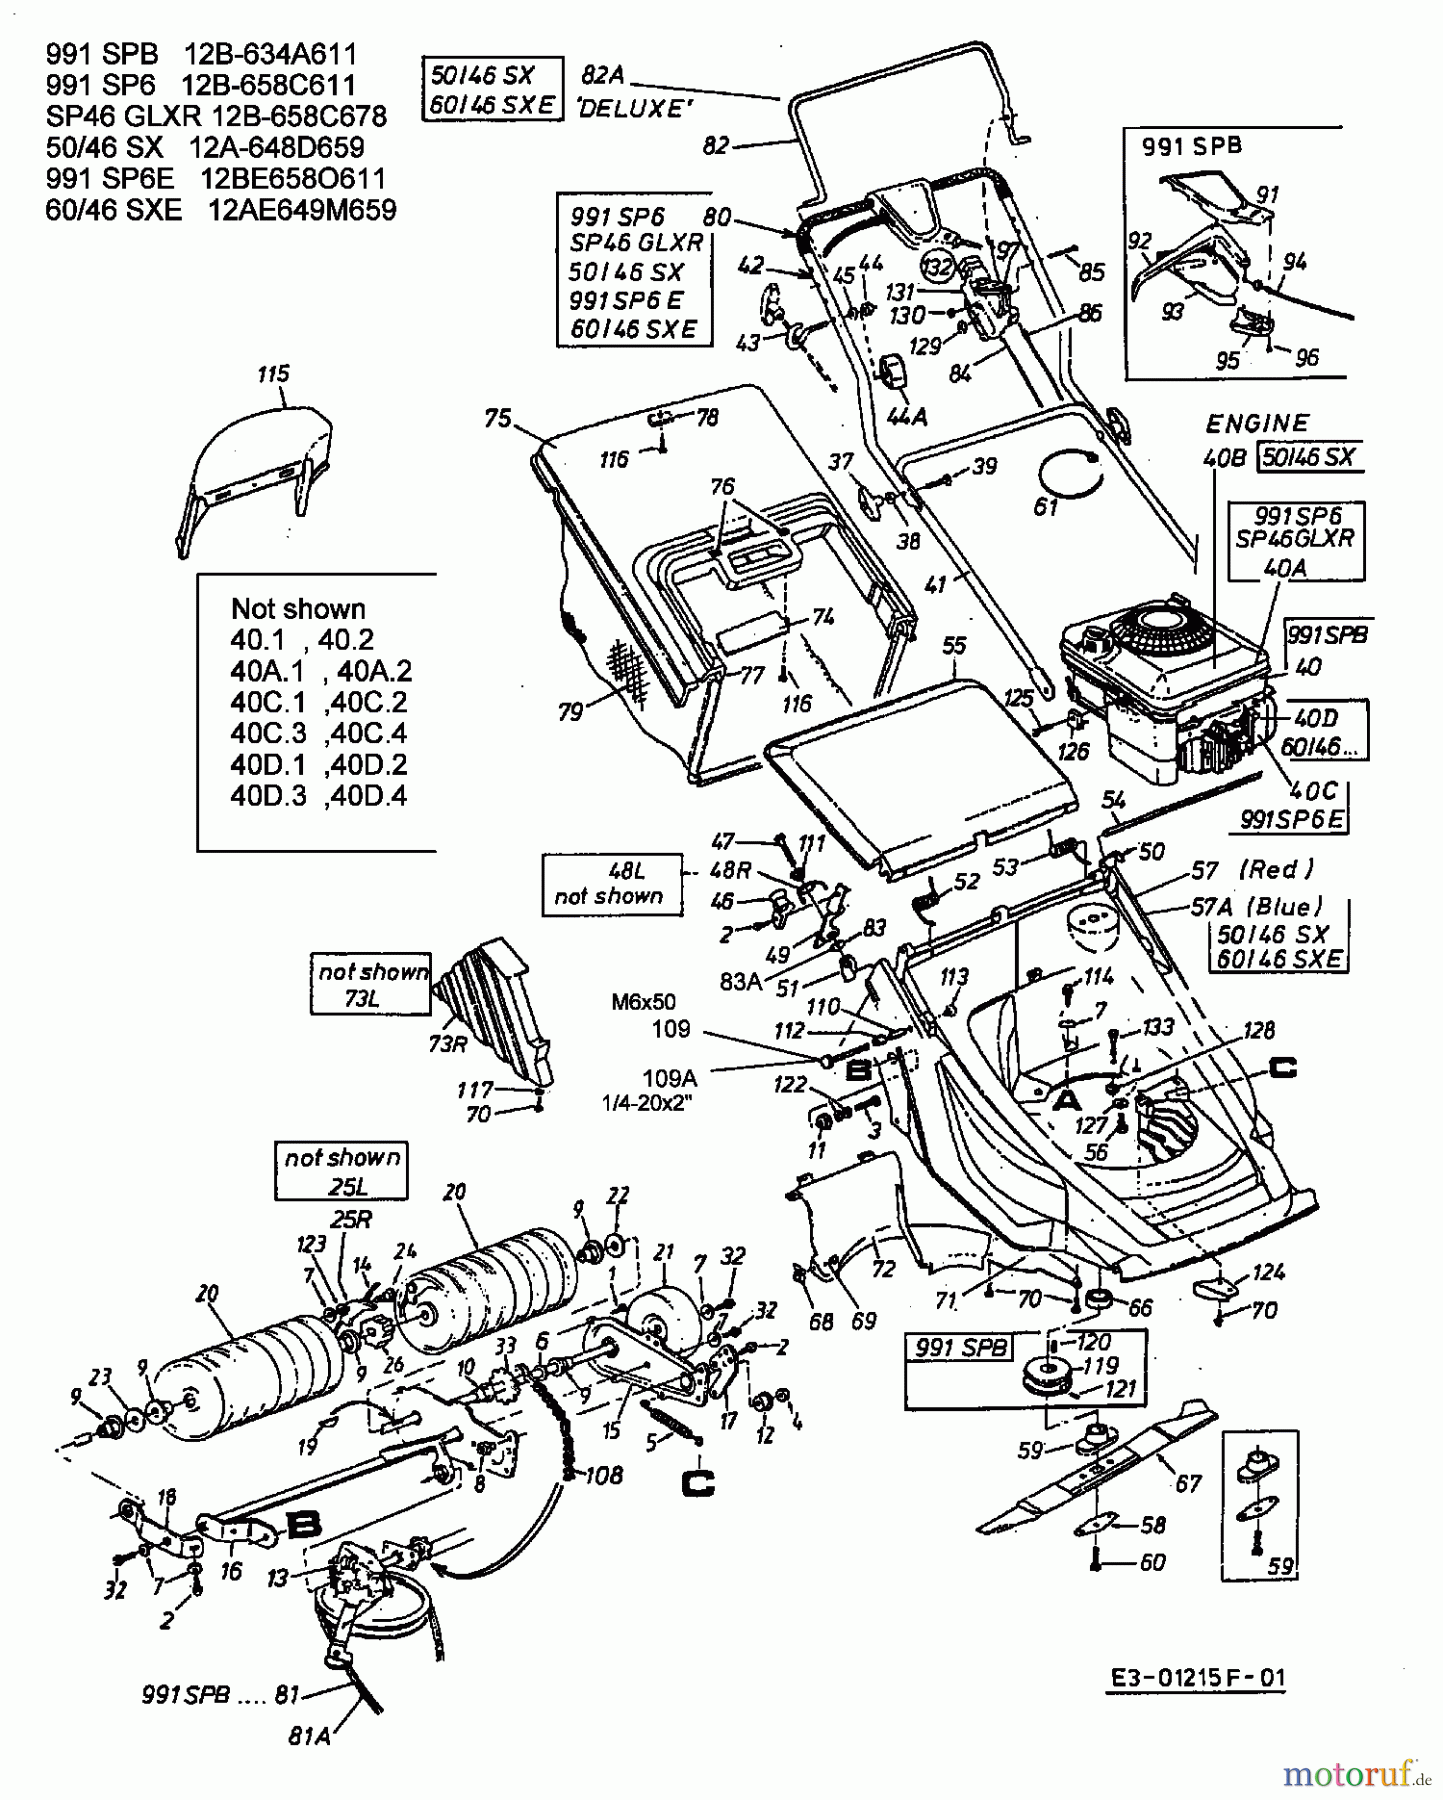  Lawnflite Motormäher mit Antrieb 991 SPB 12B-634A611  (2002) Grundgerät